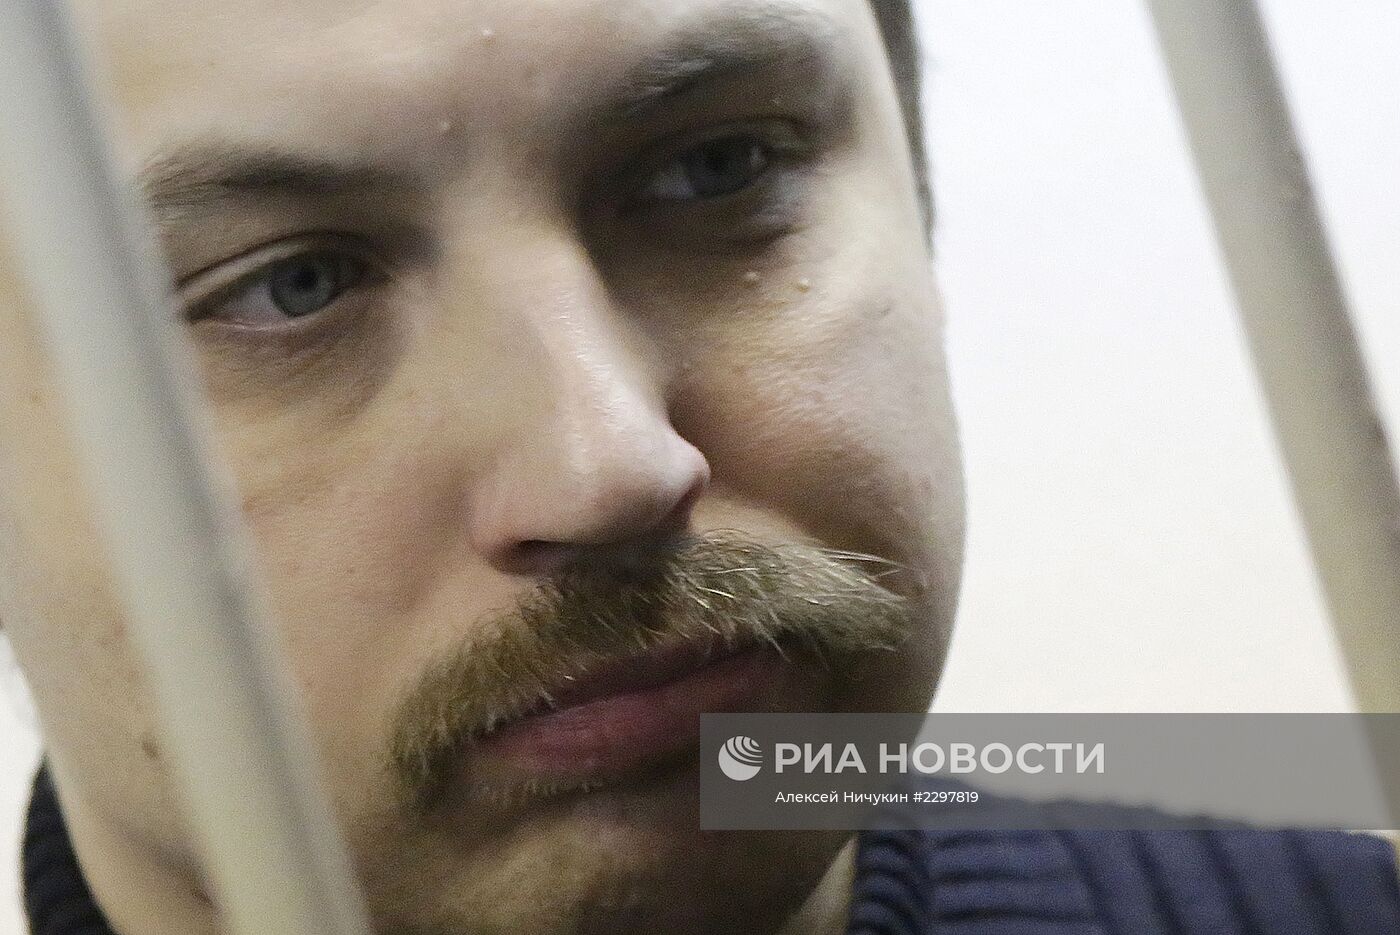 Оглашение приговора Михаилу Косенко